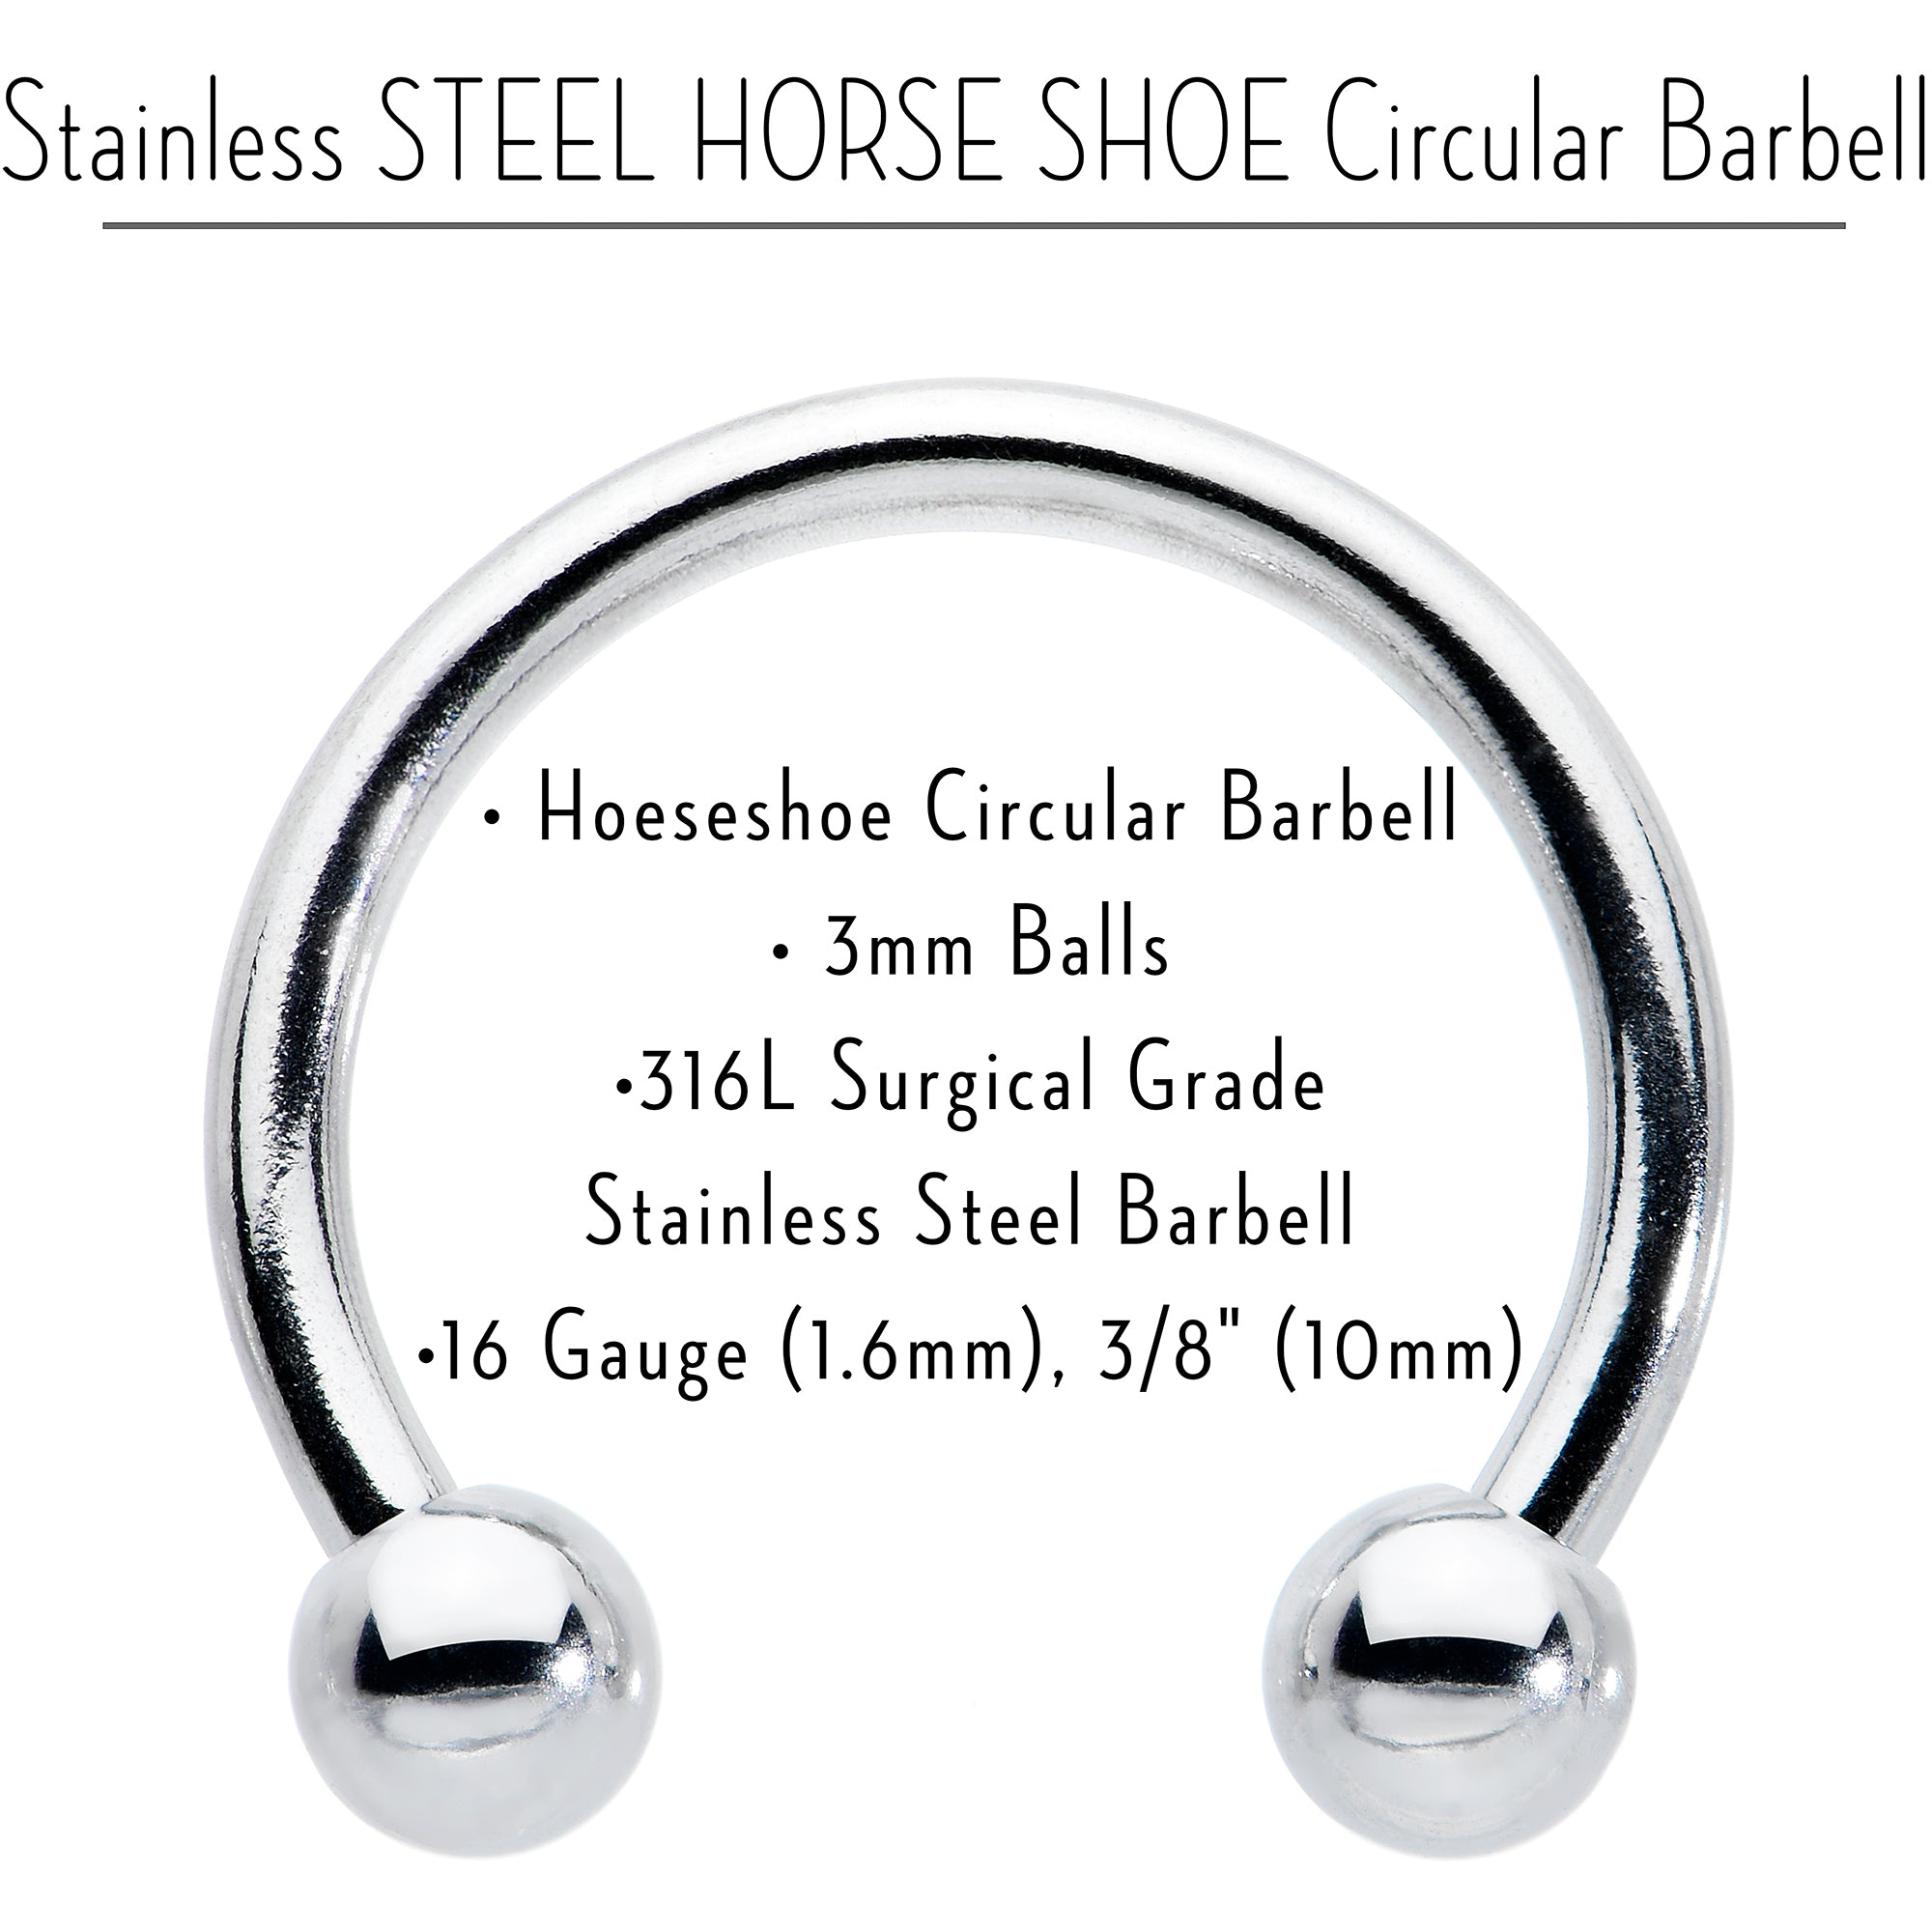 16 Gauge STEEL HORSE SHOE Circular Barbell 3/8 3mm